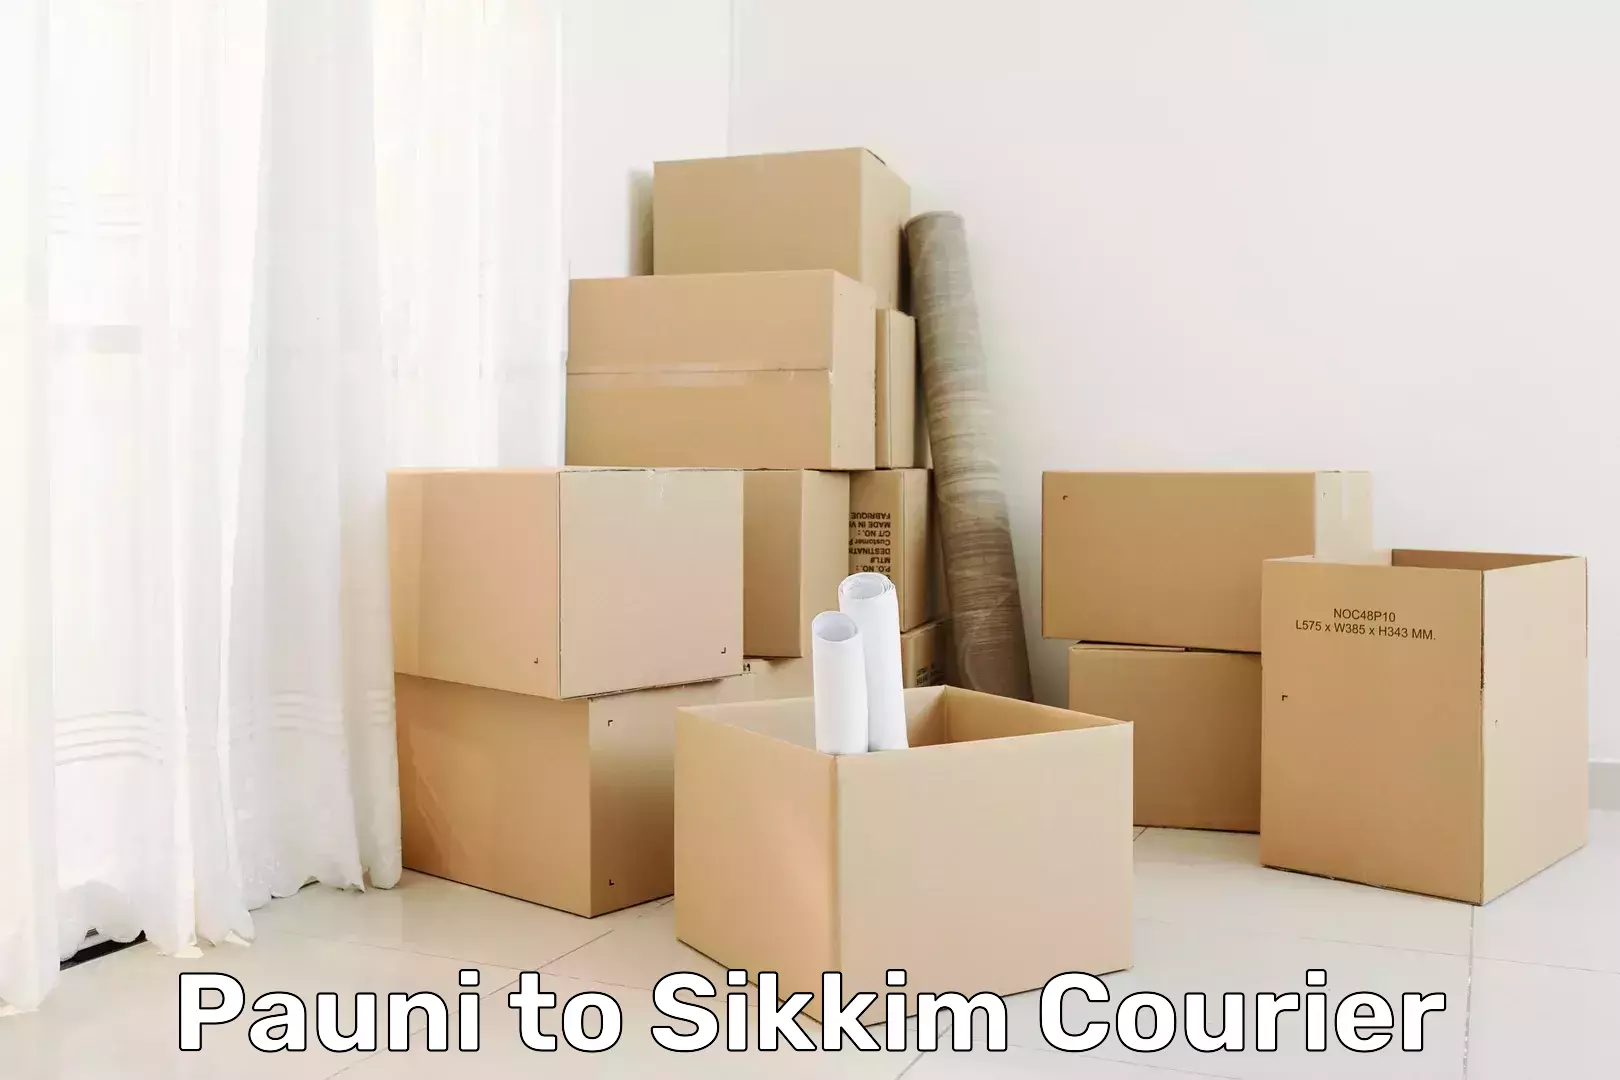 Courier service comparison Pauni to Sikkim